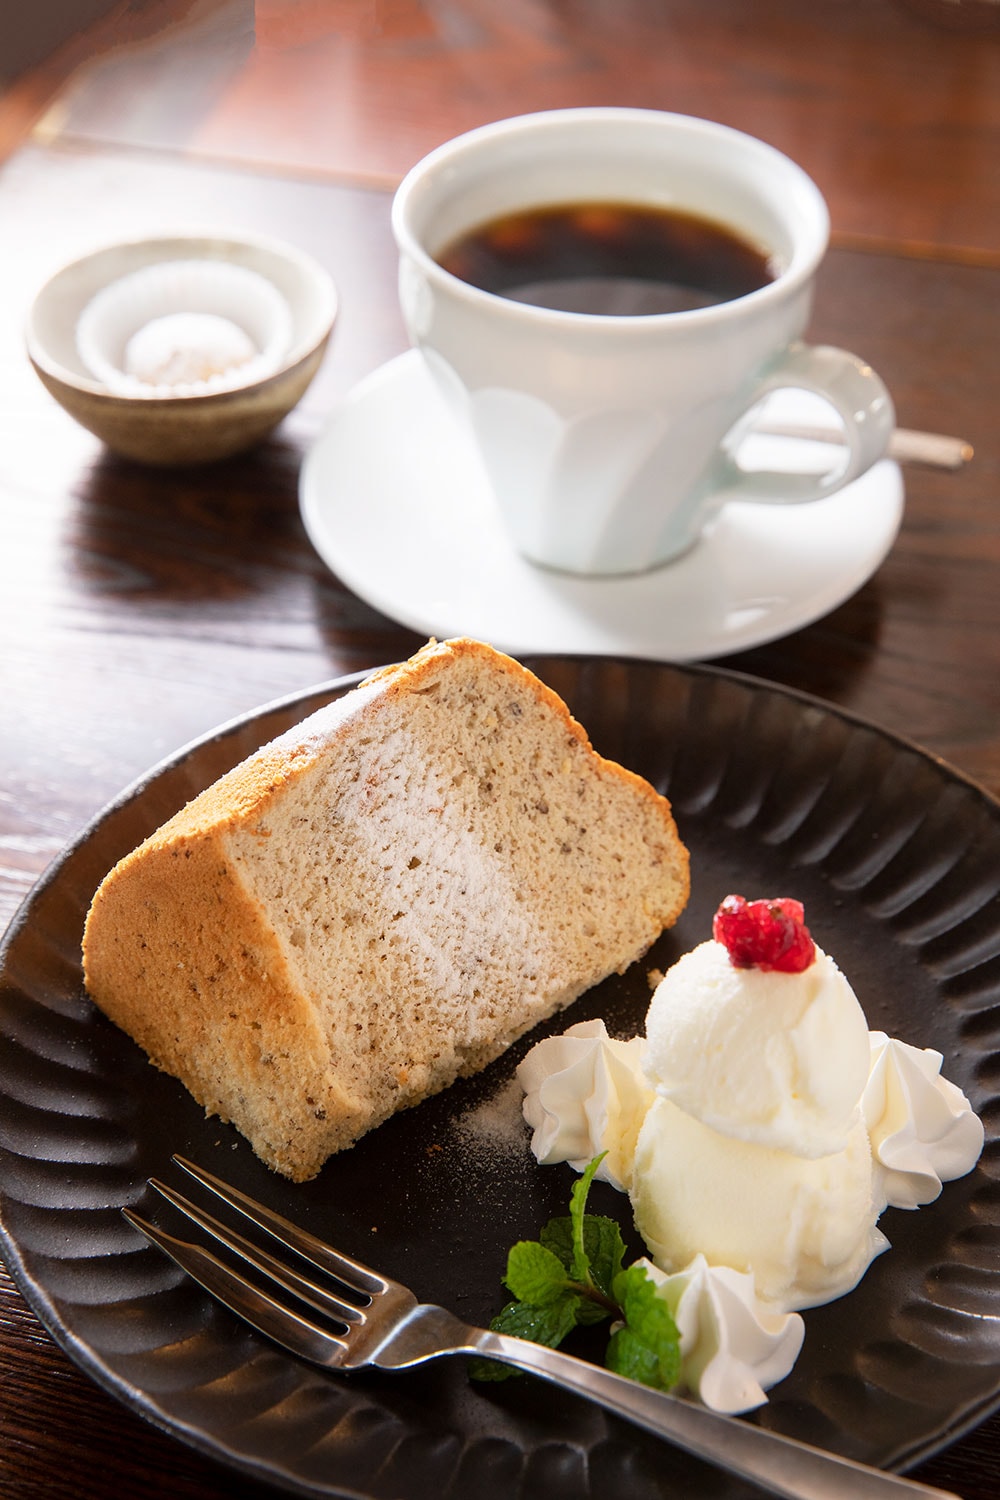 会津若松“ラバーズコーヒー”のオリジナルブレンドなど、こだわりのコーヒー(450円)が、会津本郷焼のカップで供され、上品な甘さの米粉シフォンケーキ(600円)なども美味。